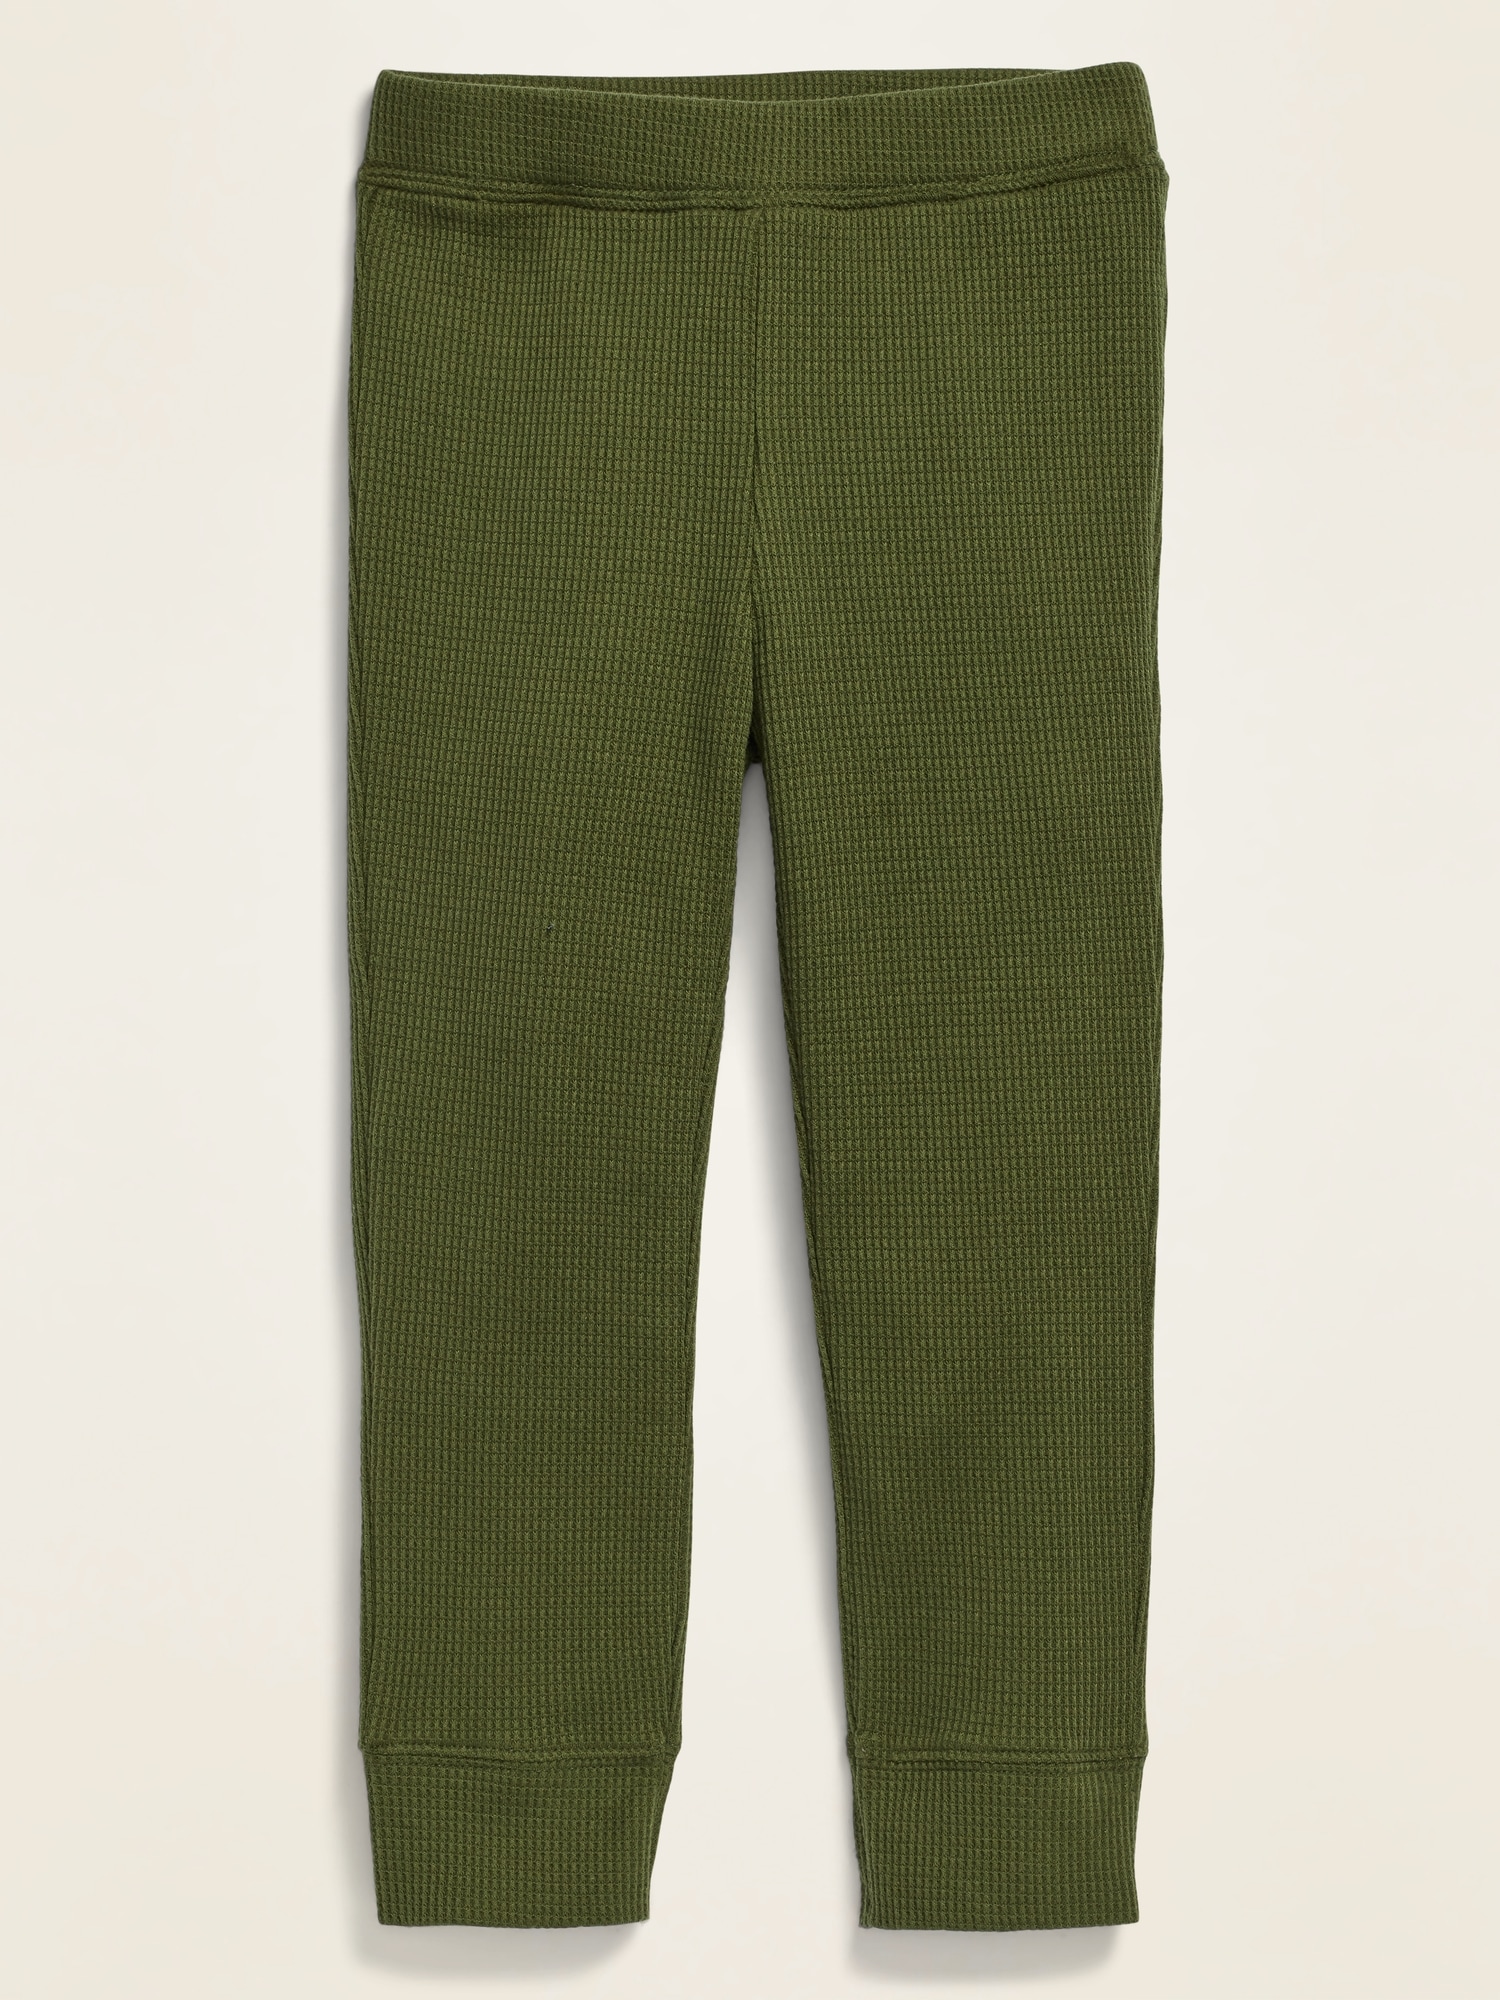 3t green leggings